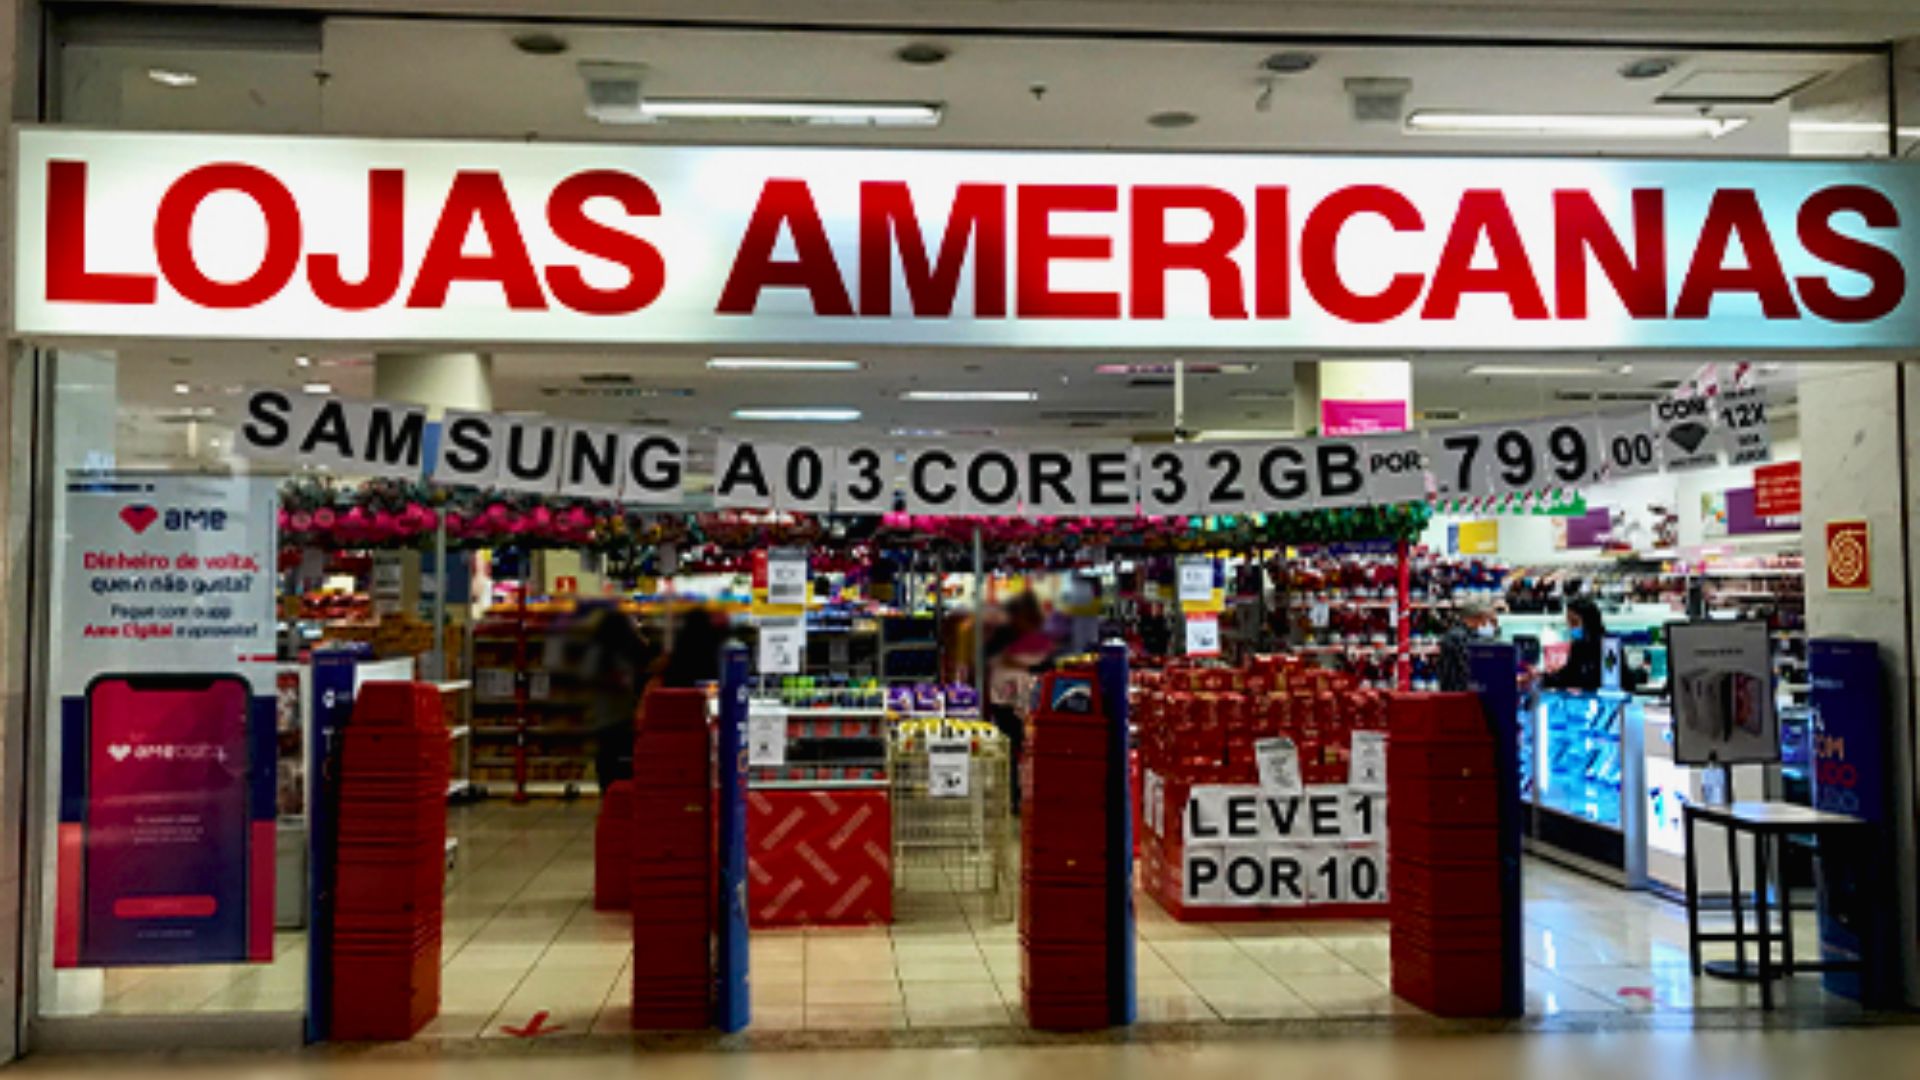 Lojas da Americanas em um Shopping em Curitiba